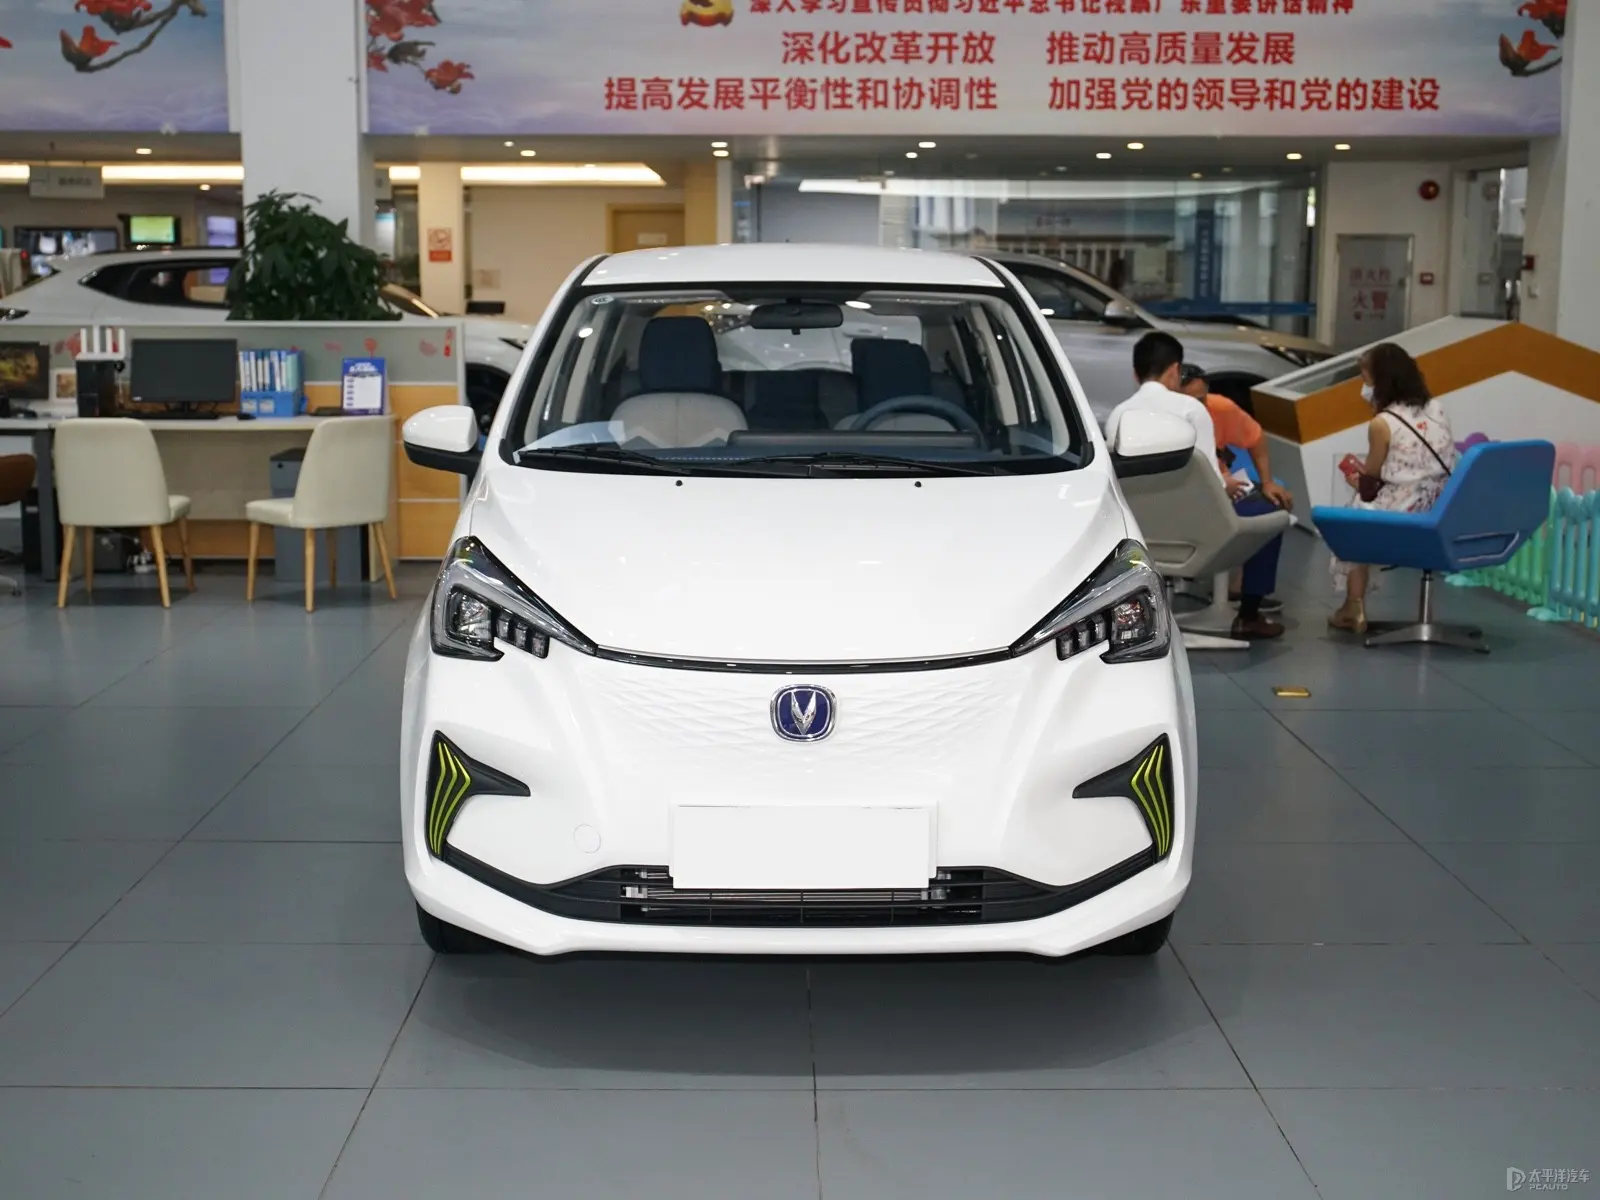 Alta qualità più economica con nuova energia piccola auto elettrica Changan benben e-star 2023 0km nuova changan e star